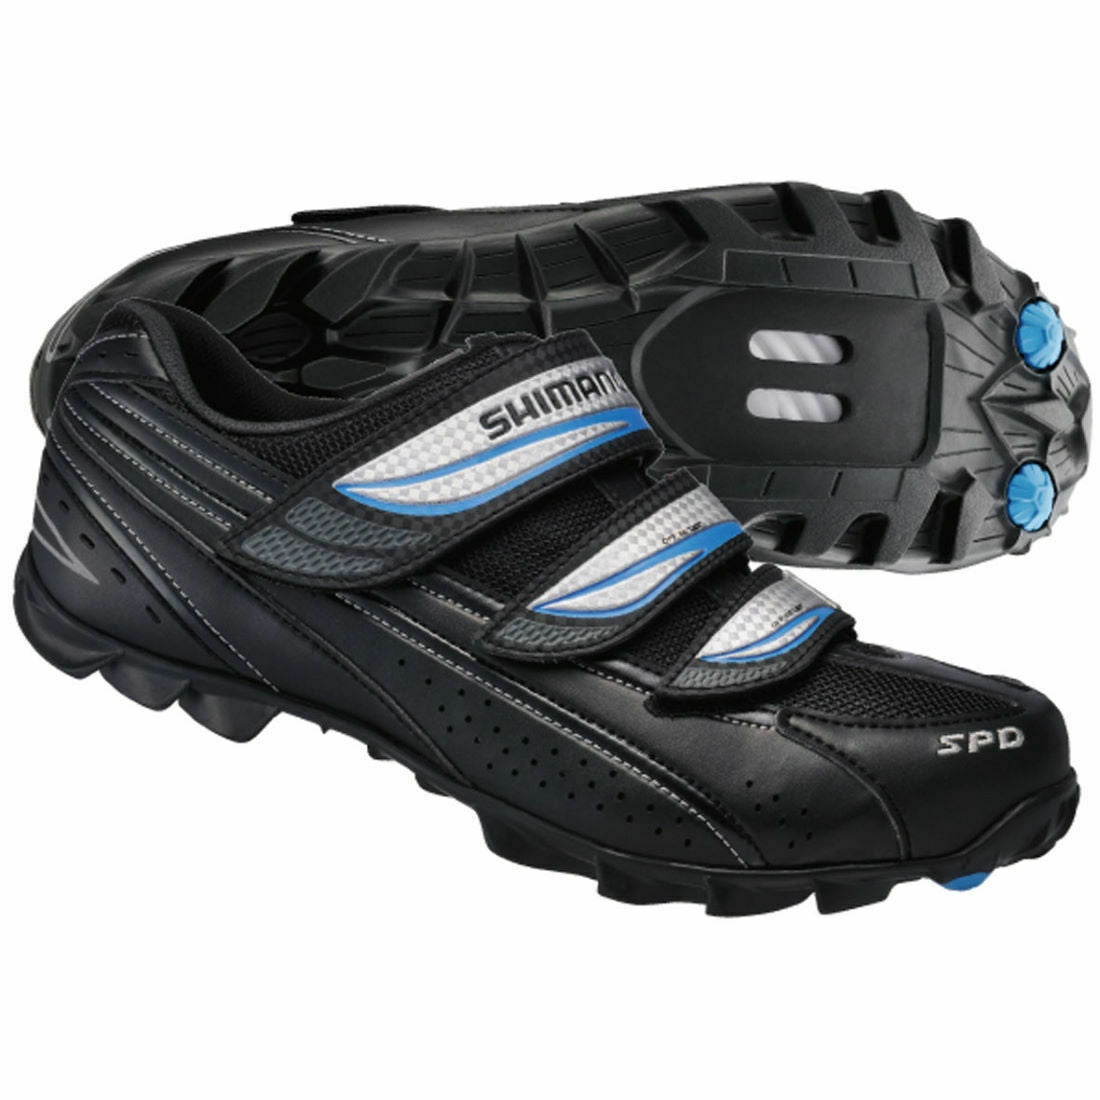 Shimano WM51 SPD Womens MTB Cycling Shoes - Black - UK 3.5 - Sportandleisure.com (6968128274586)